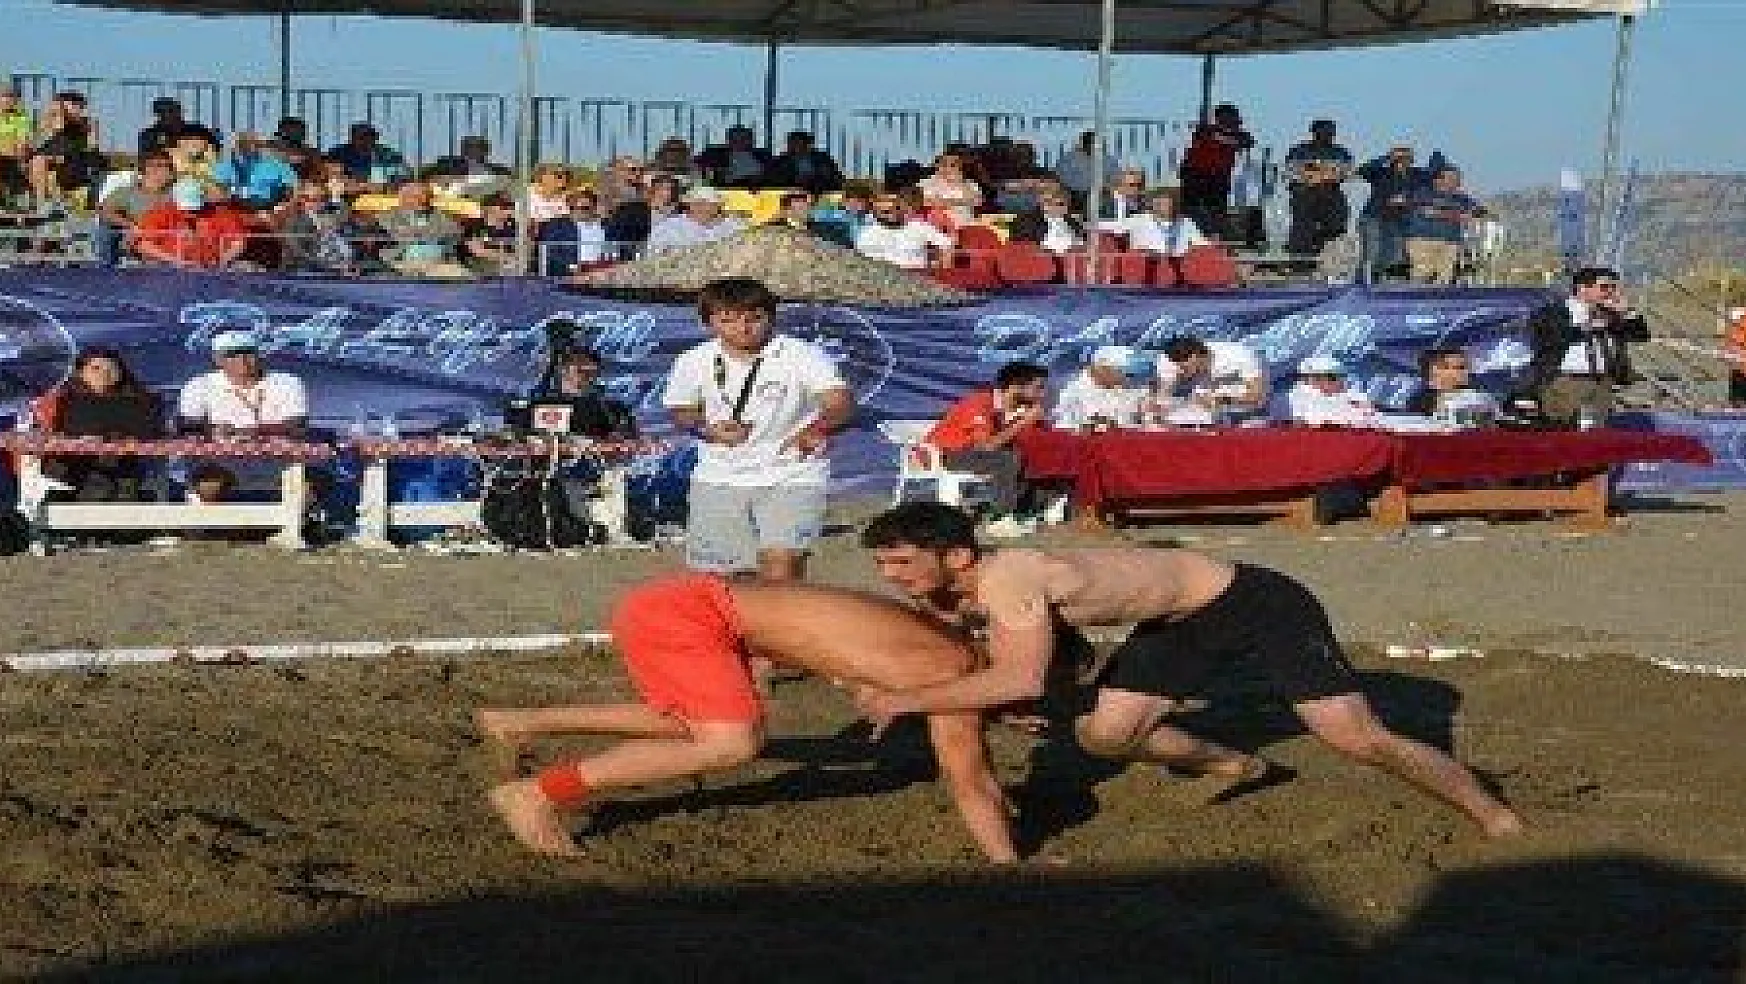 Dalyan'da Dünya Plaj Güreşi Şampiyonası